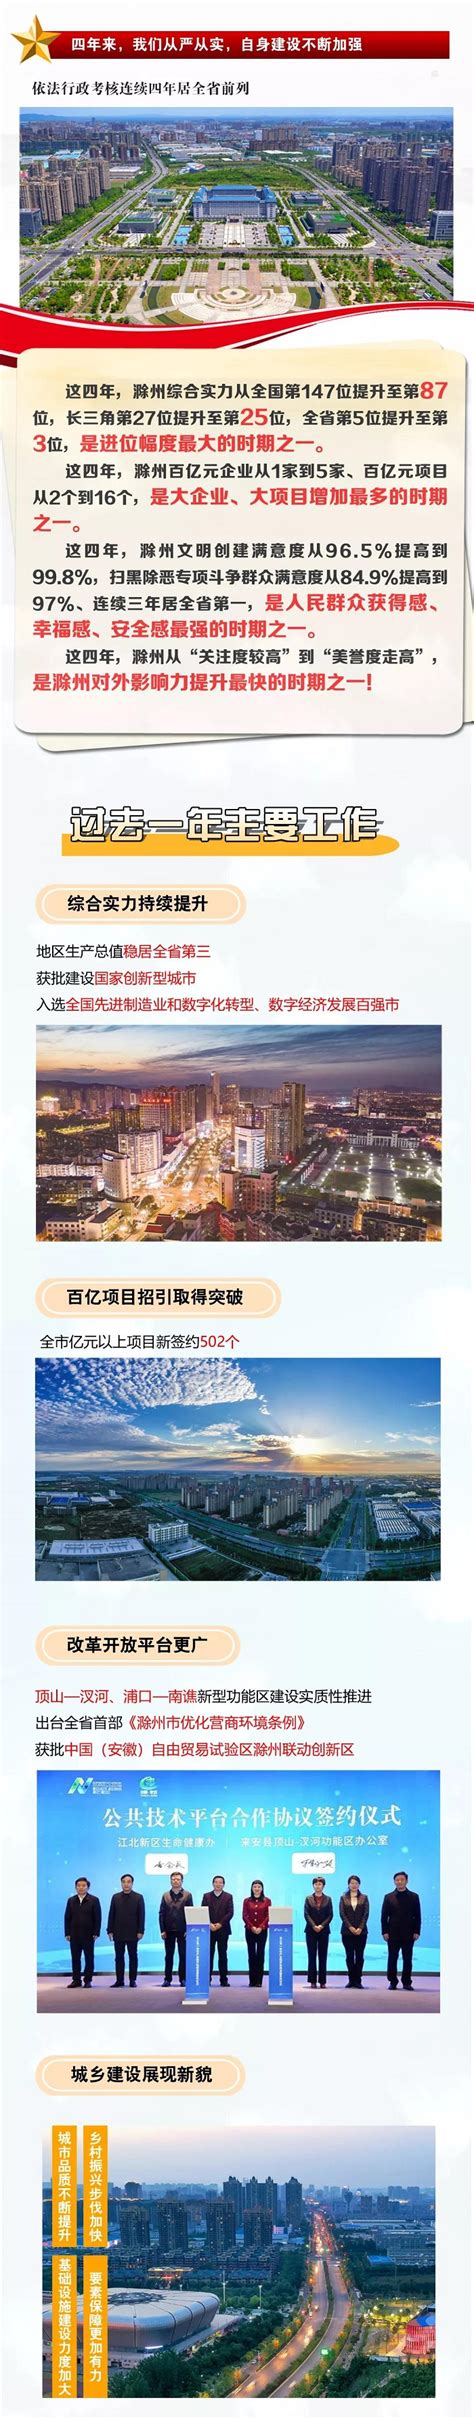 【图表图解】2022年滁州市政府工作报告